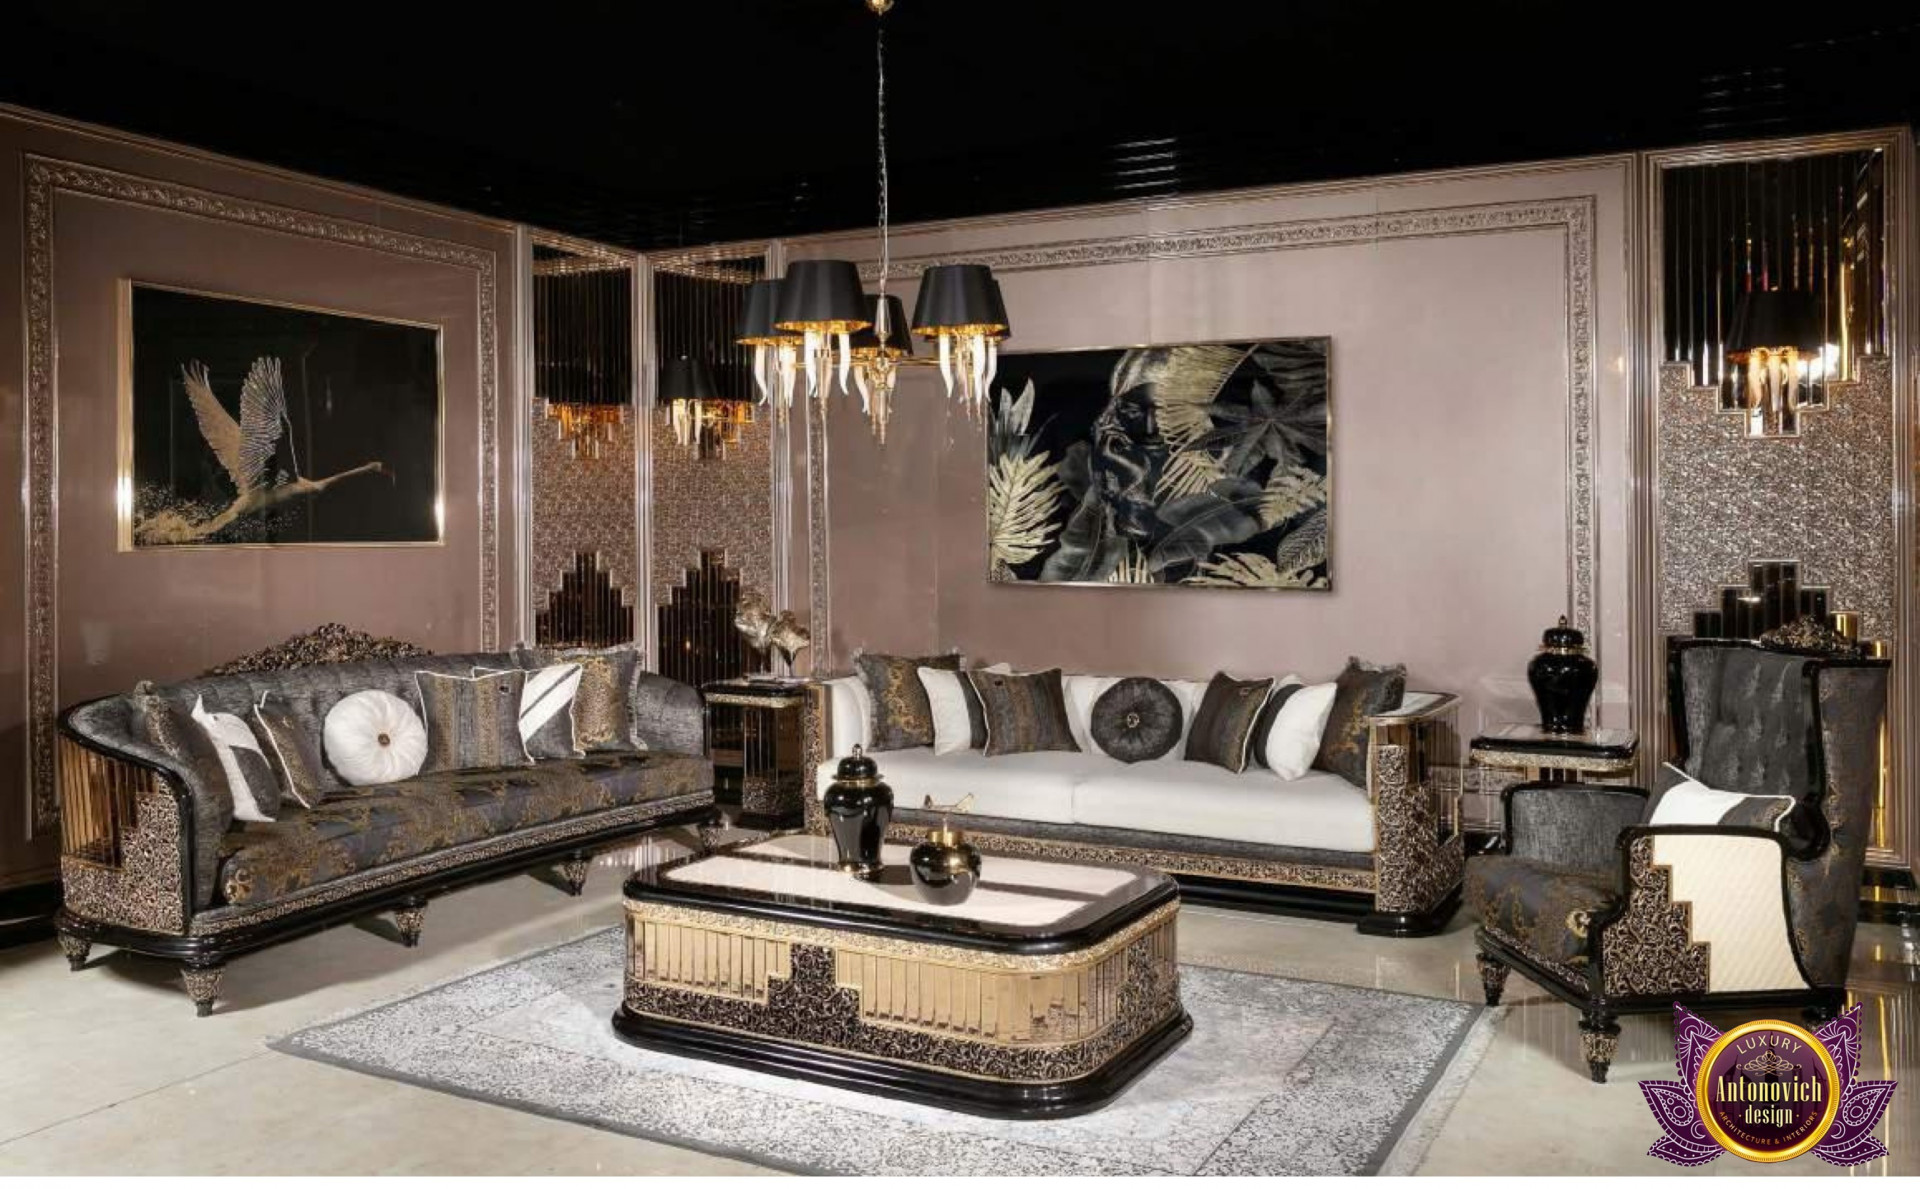 Top Home Center Sofa Beds In Dubai